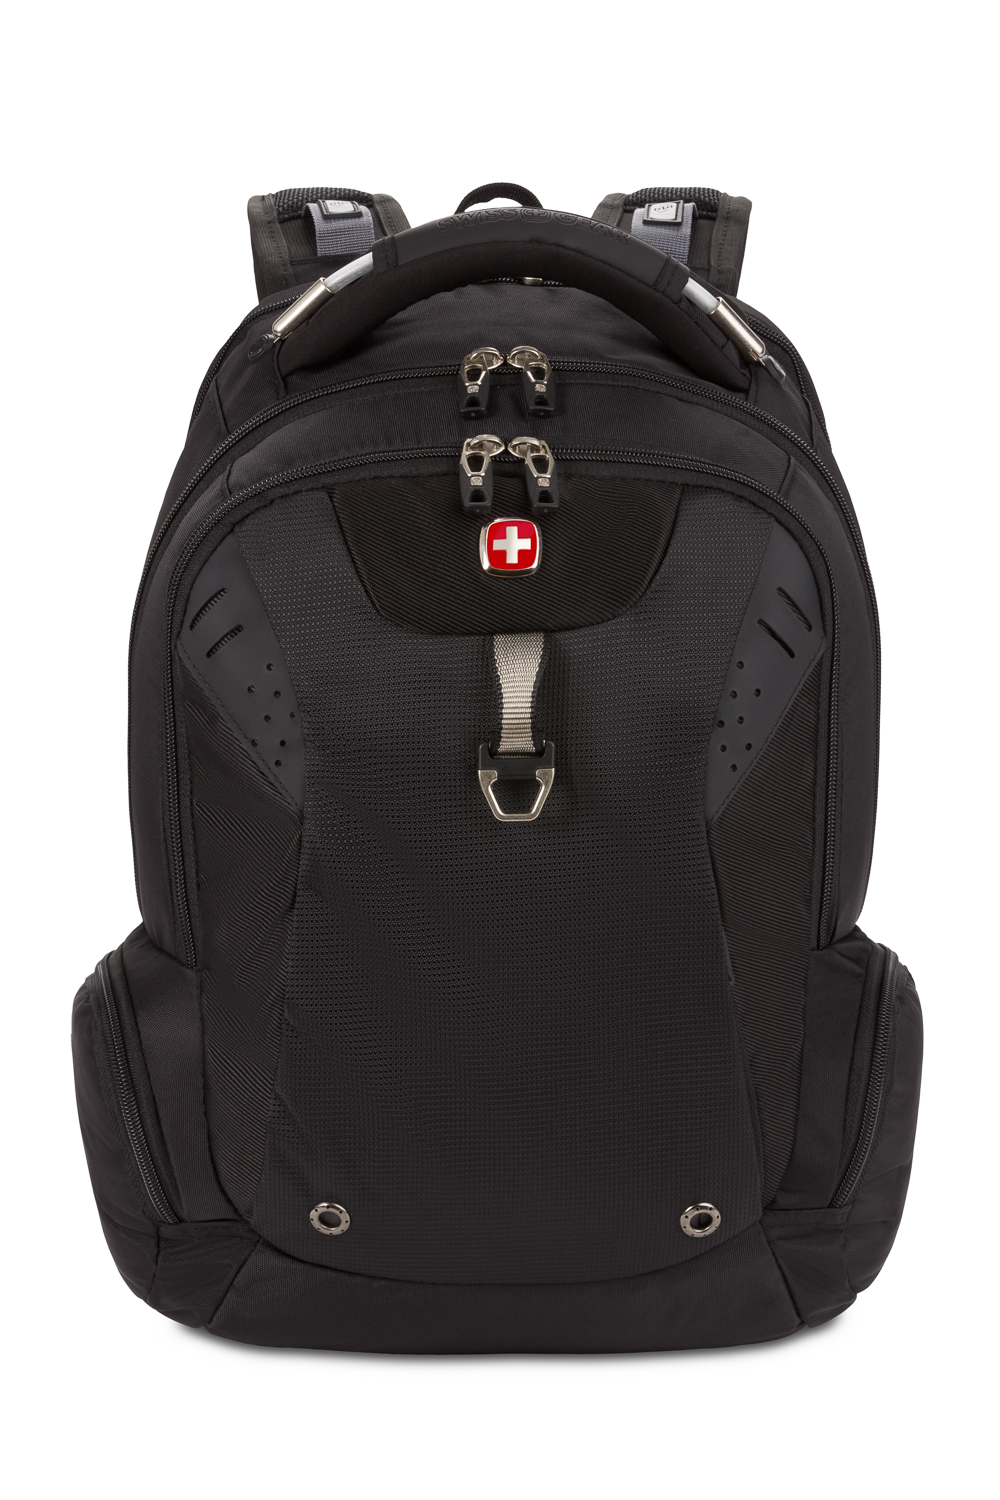 Na Swiss Army Knife Backpack Men's 90l Super Large Capacity Business  Backpack Outdoor Business Travel Bag Travel Bag | Fruugo KR